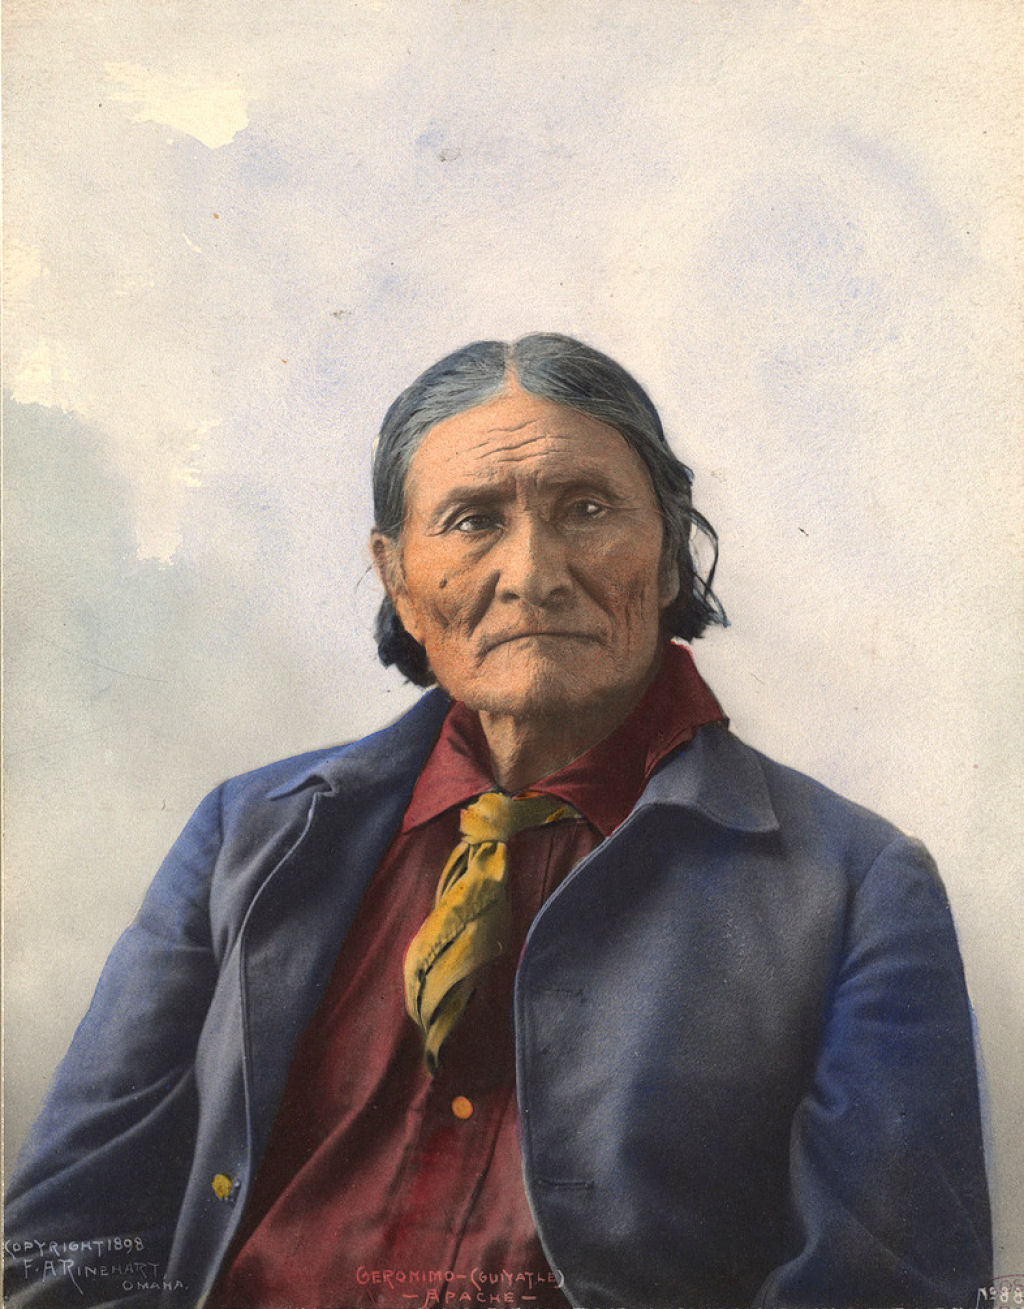 Impressionantes fotos históricas coloridas de nativos americanos do final do século 19 e início do século 20 27